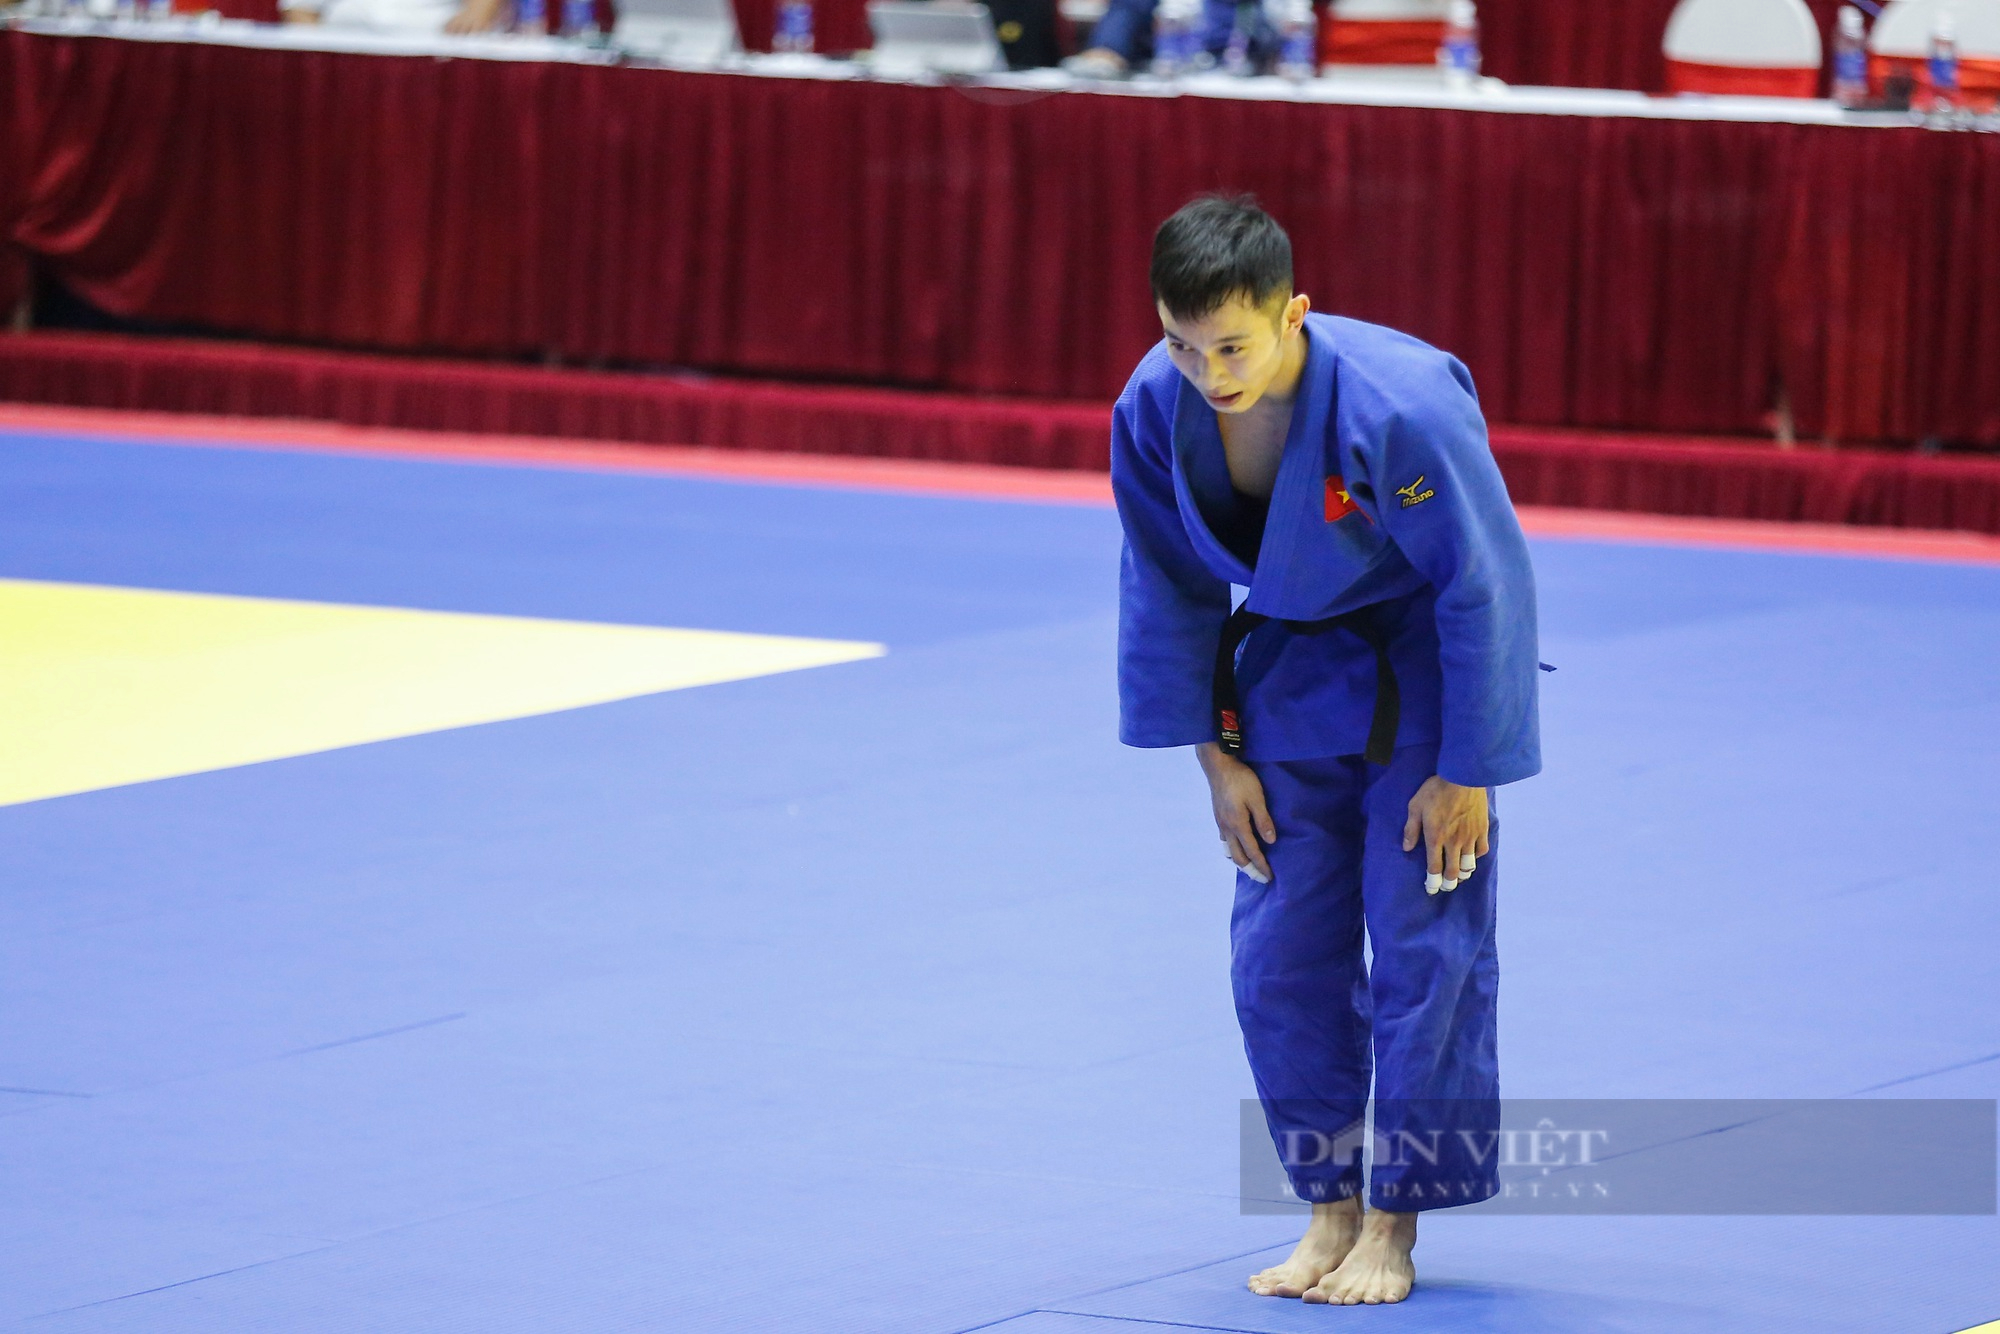 Võ sĩ Judo Việt Nam khóa chặt đối thủ và giành chiến thắng bằng luật bàn thắng vàng - Ảnh 4.